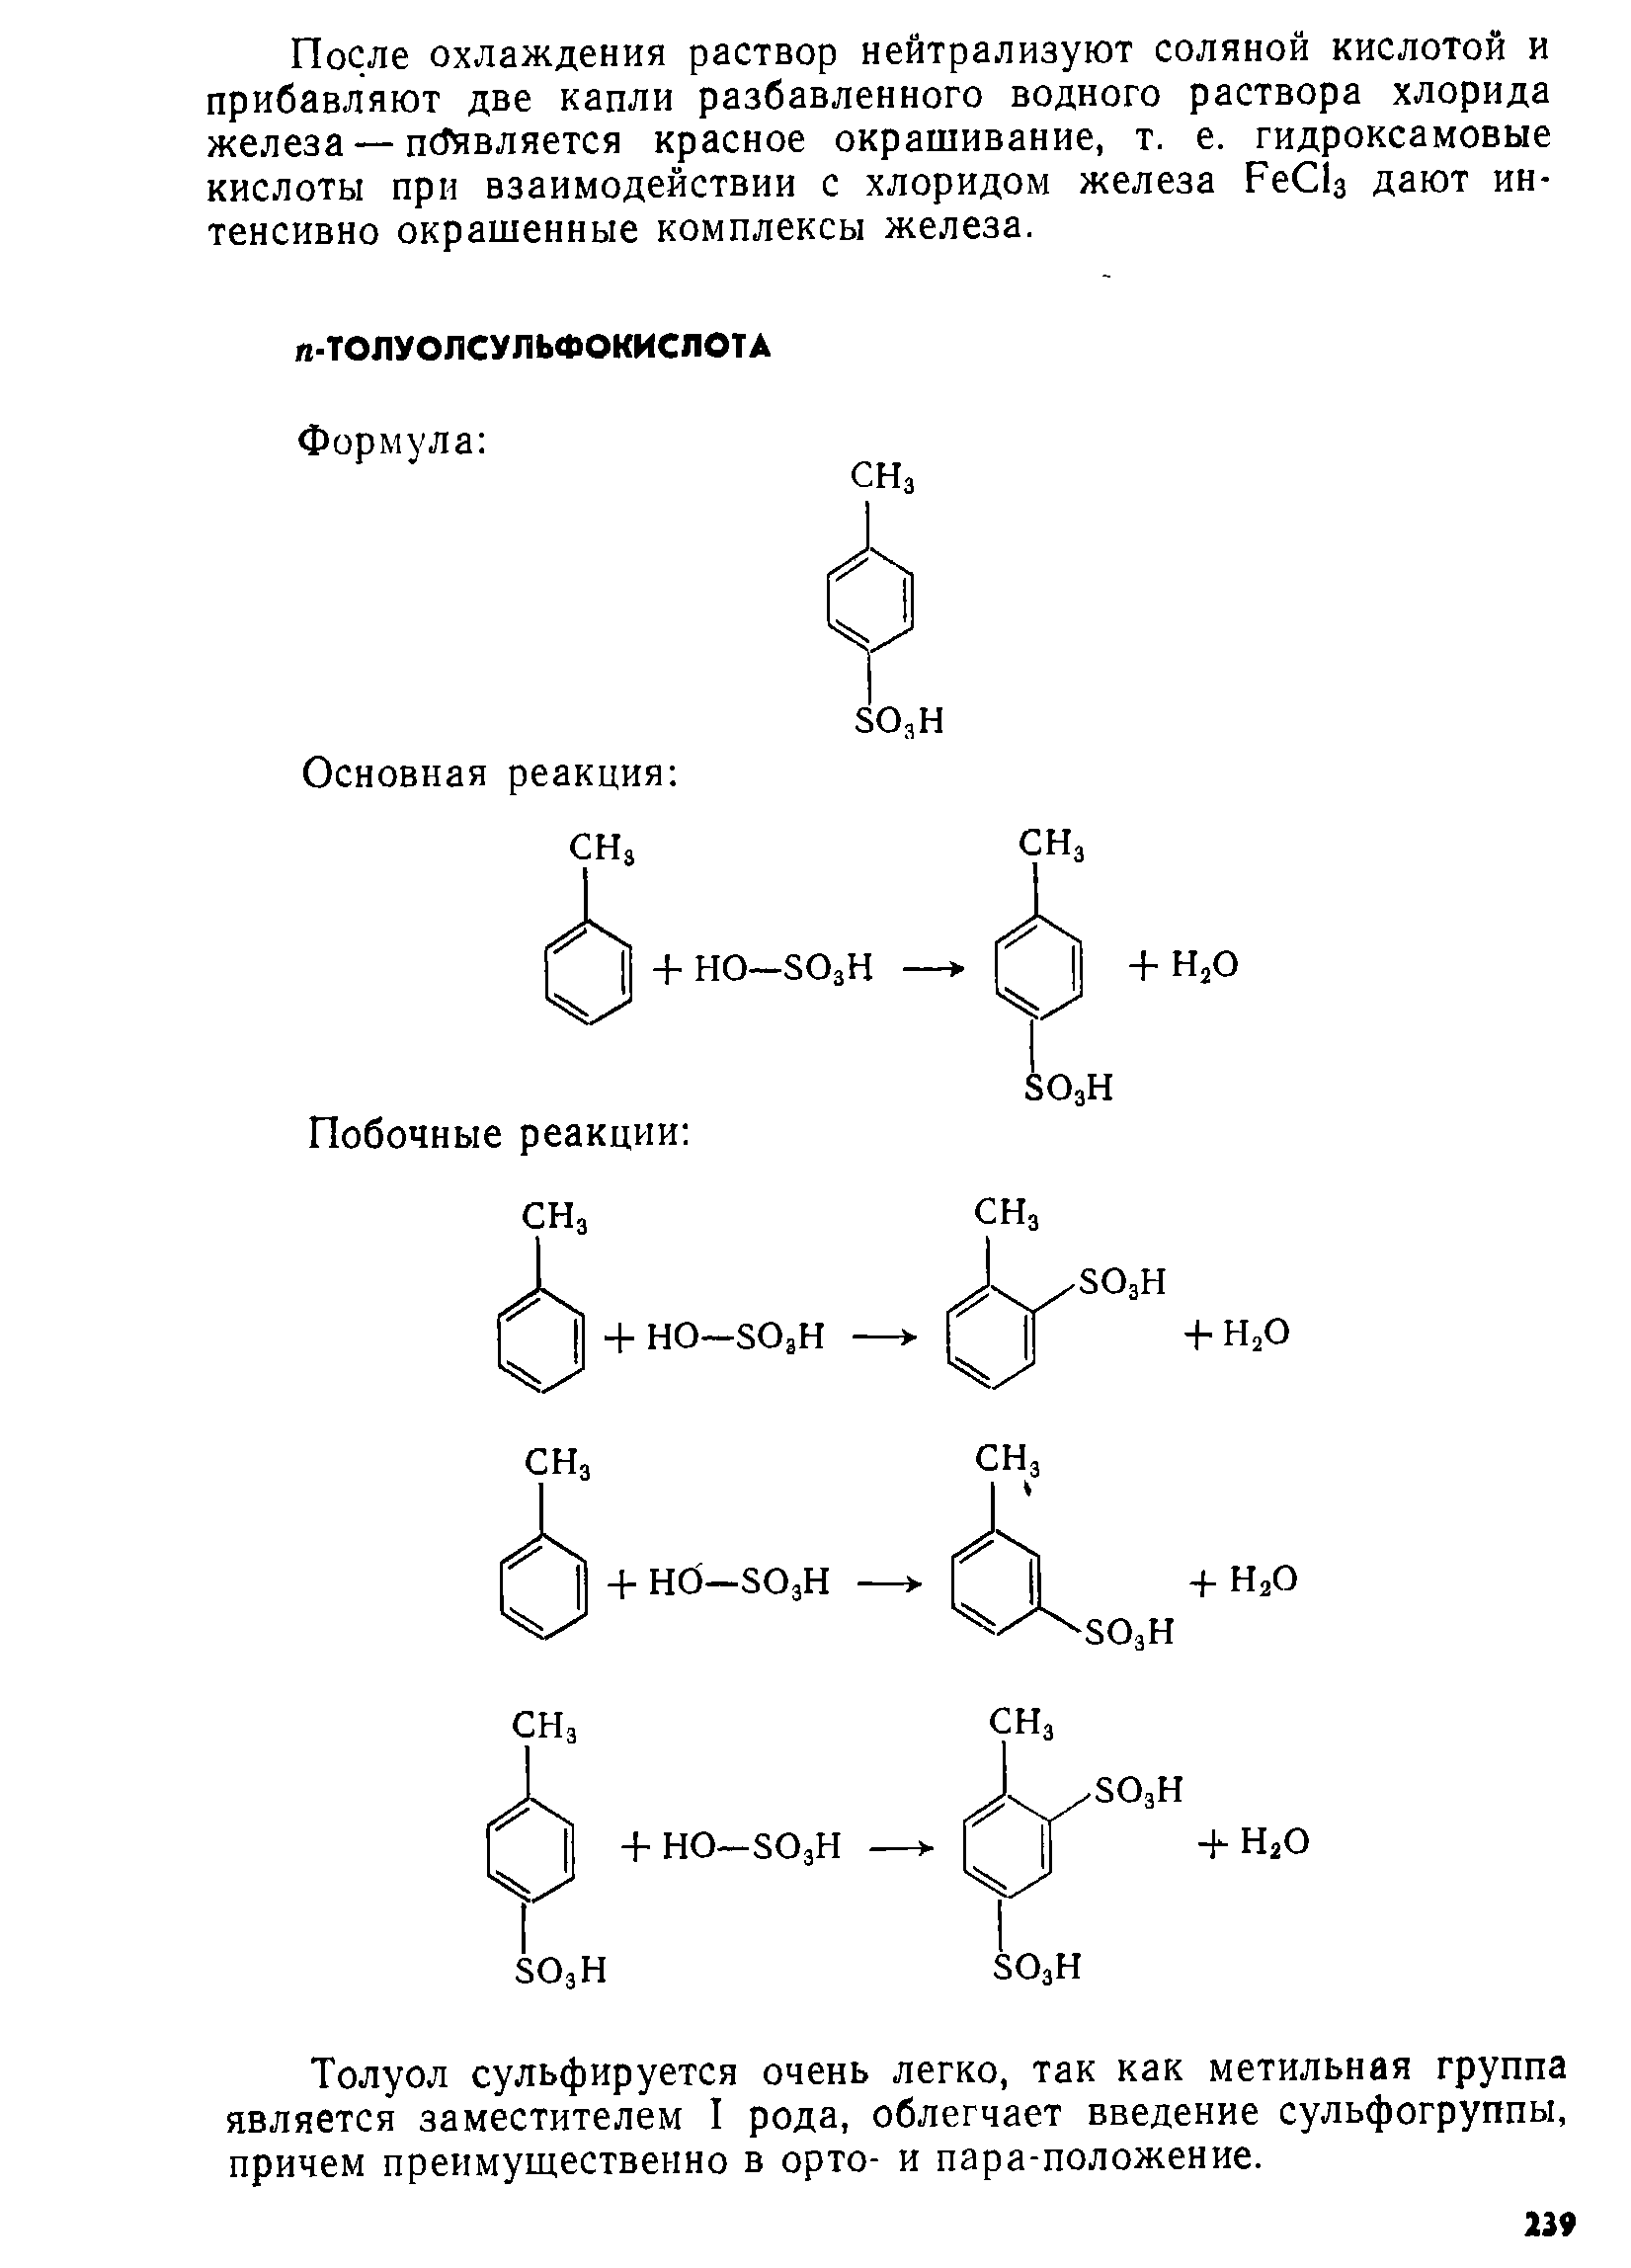 Толуол сульфируется очень легко, так как метильная группа является заместителем I рода, облегчает введение сульфогруппы, причем преимущественно в орто- и пара-положение.